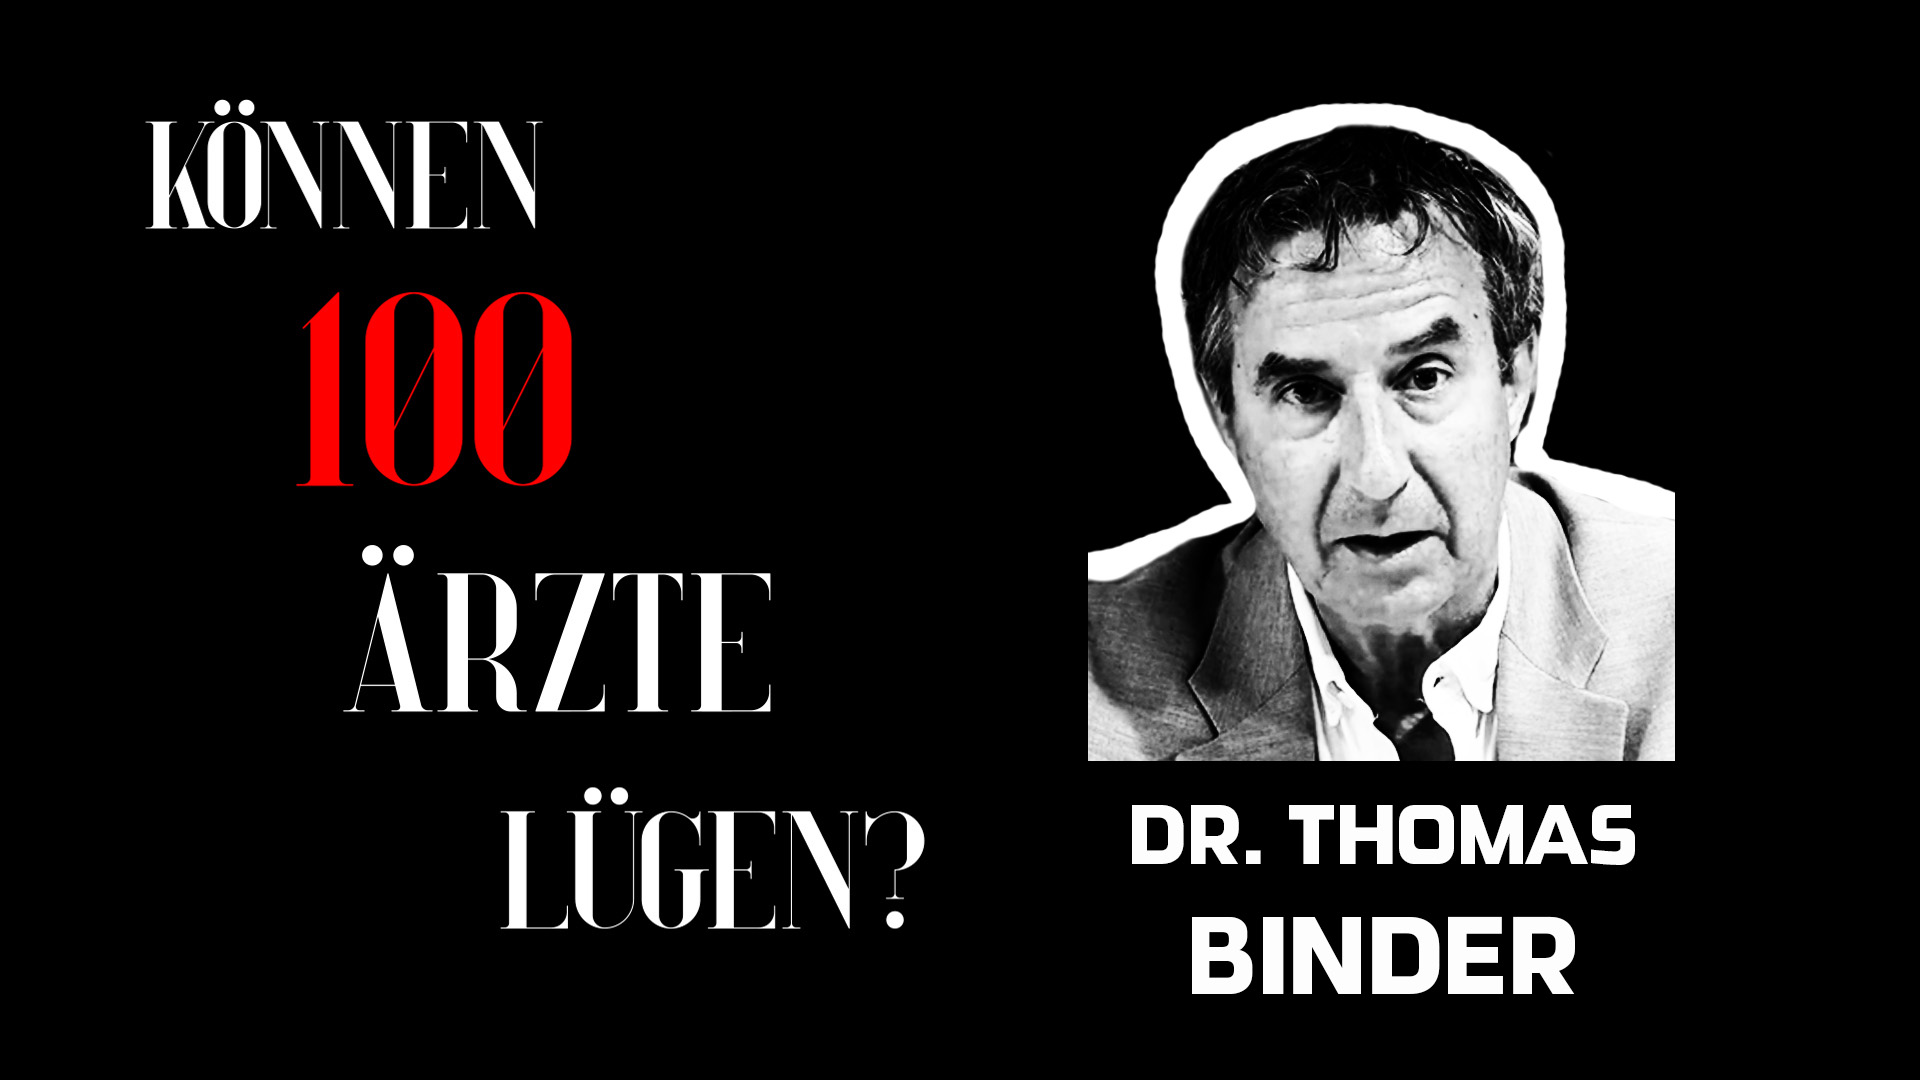 Thomas Binder